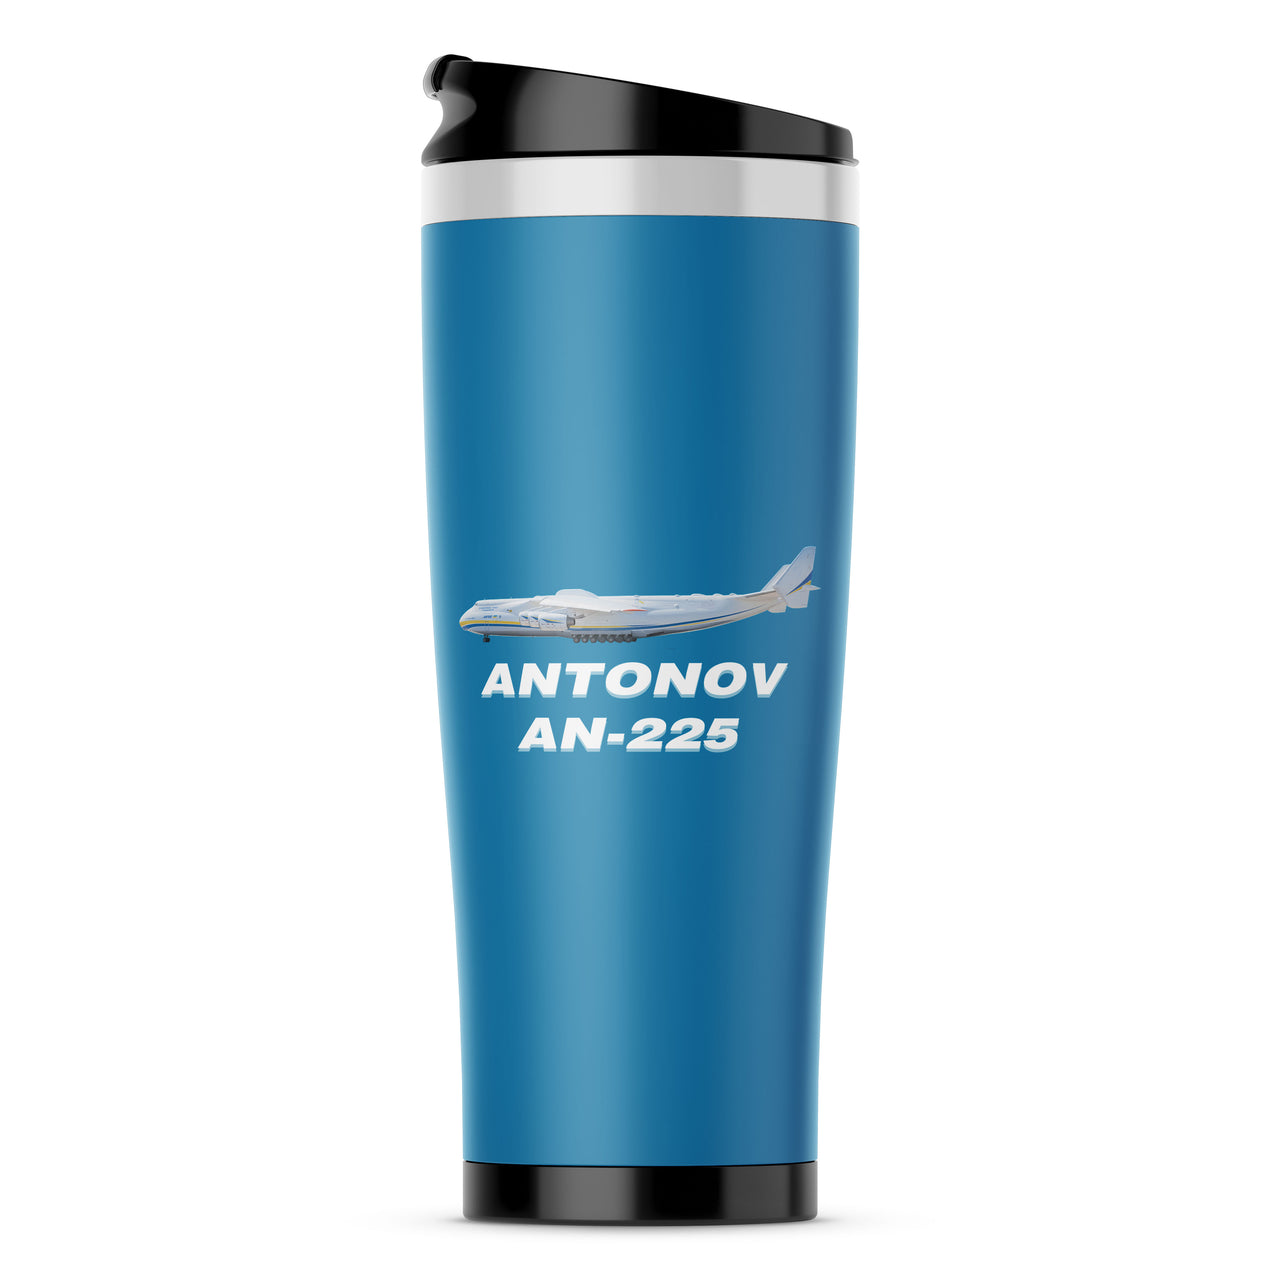 The Antonov AN-225 Designed Travel Mugs